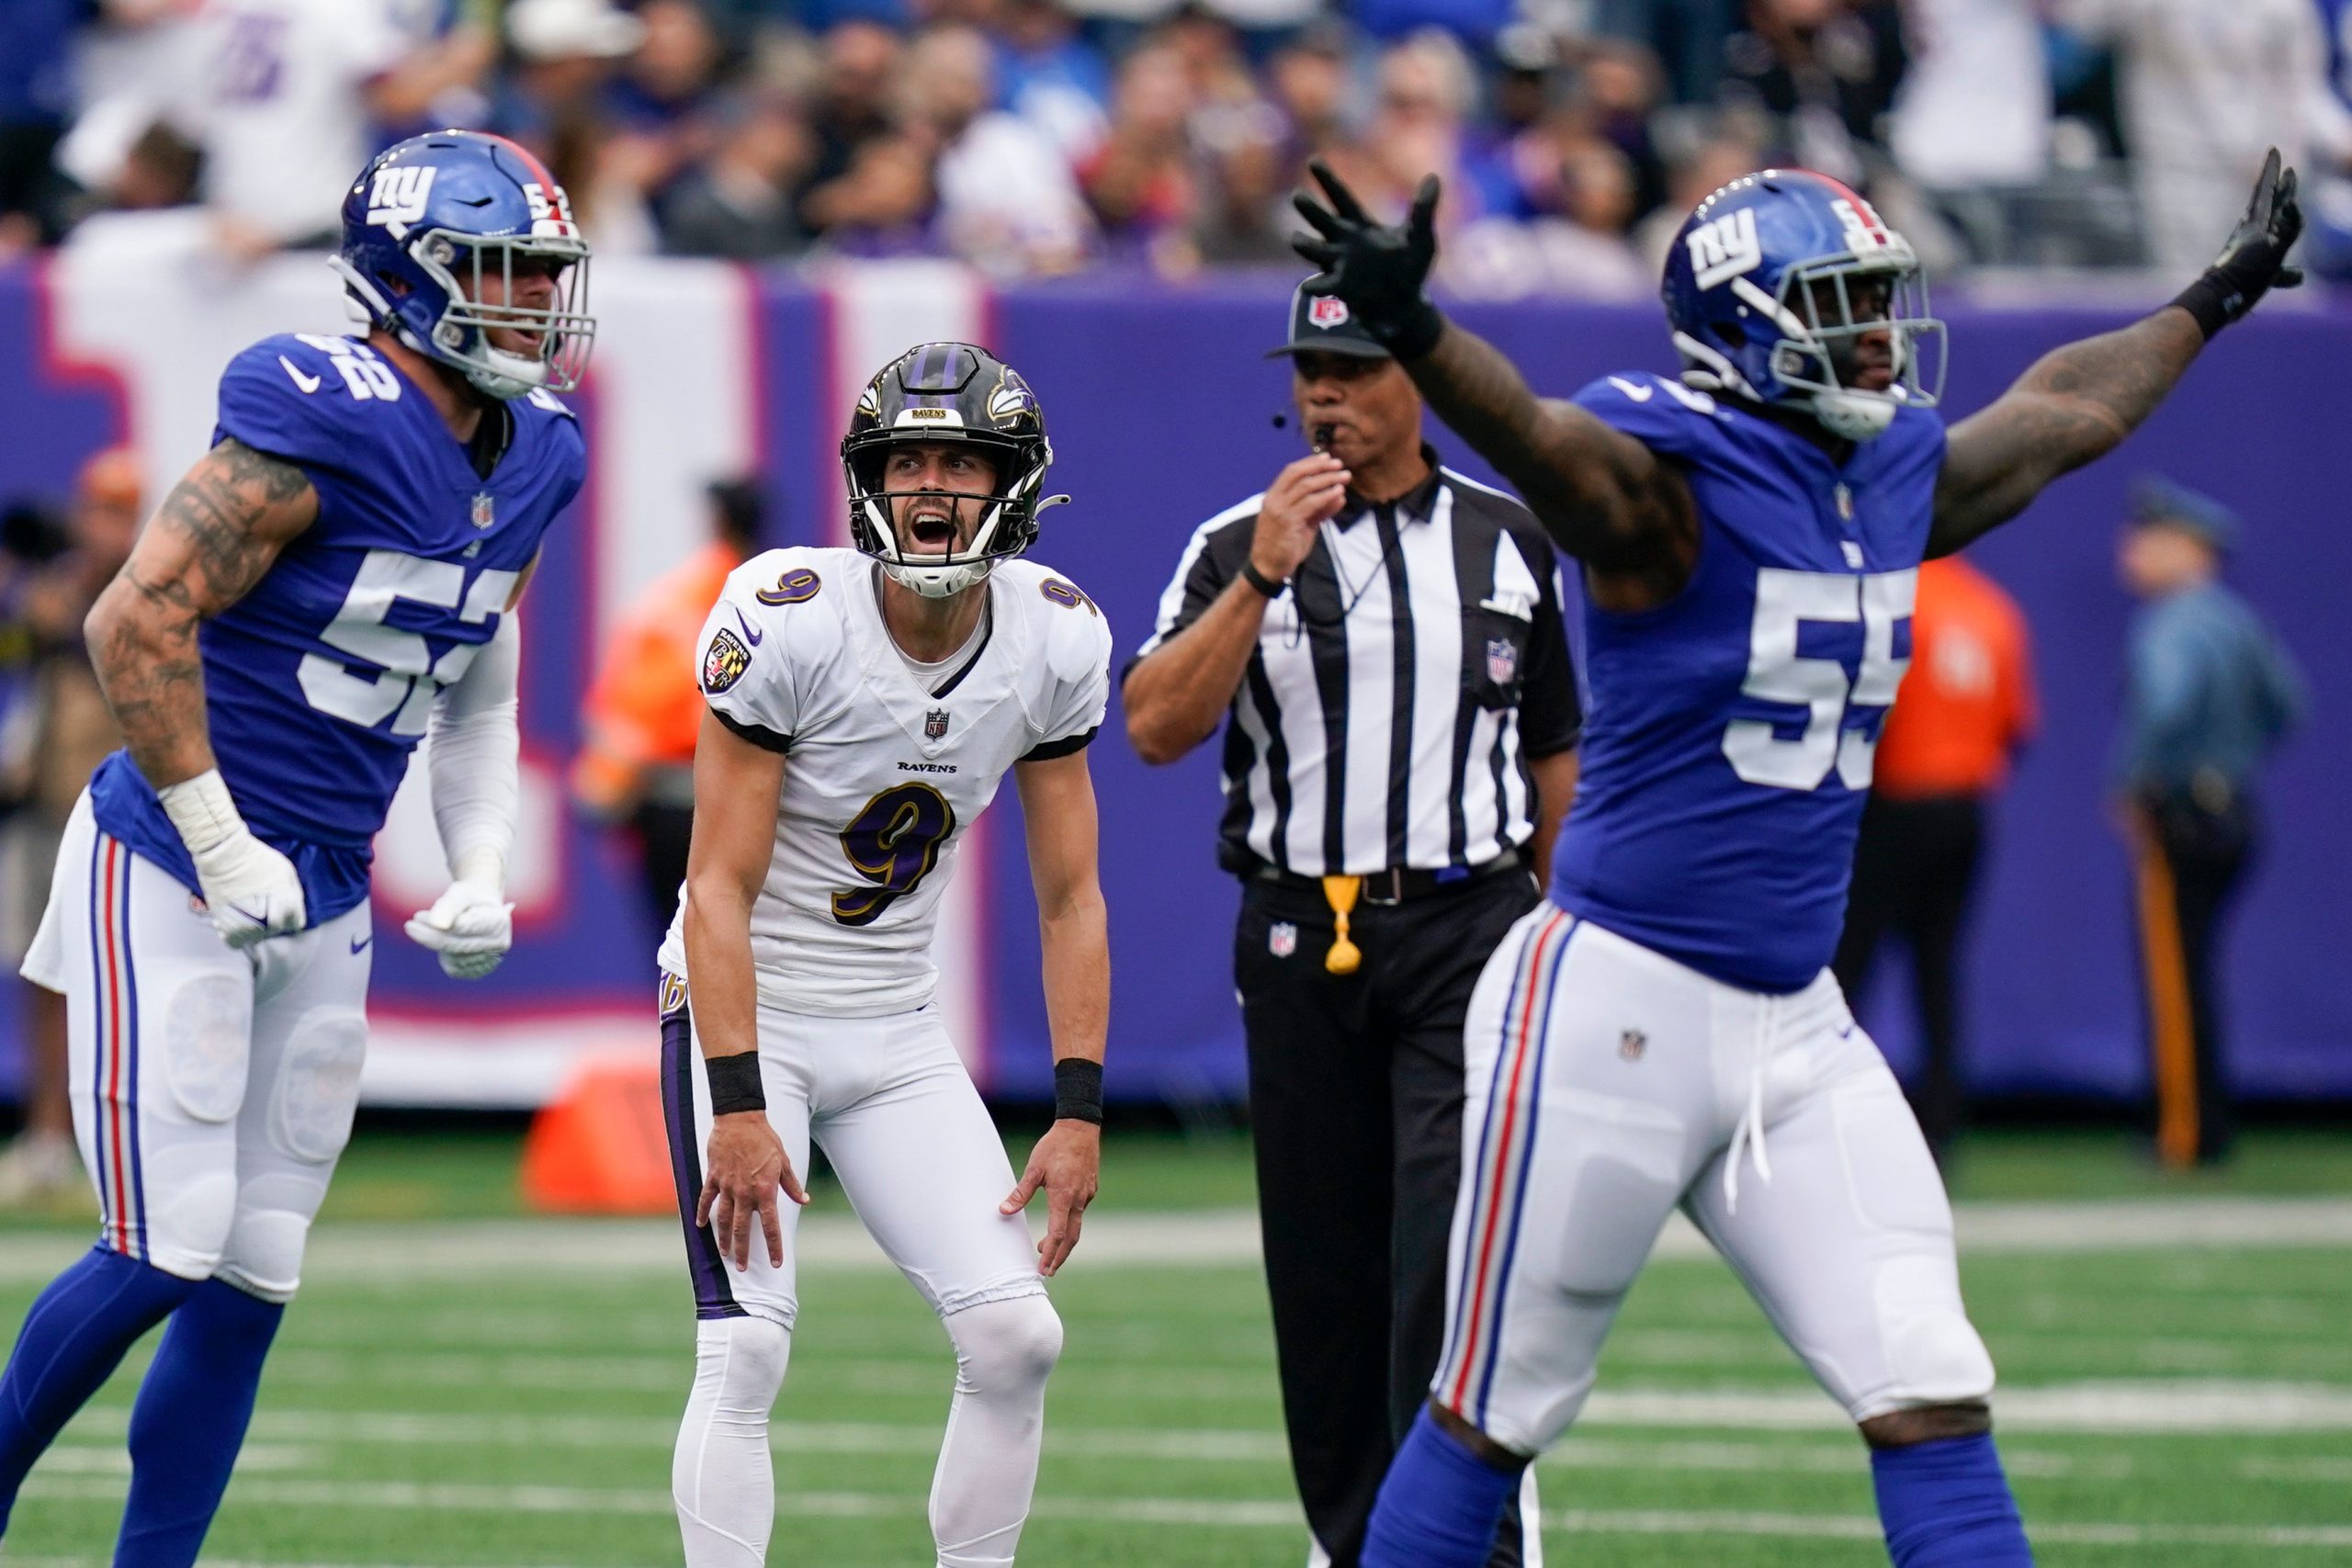 Justin Tucker missed a FG? Fans shocked after Ravens’ kicker errs vs Giants